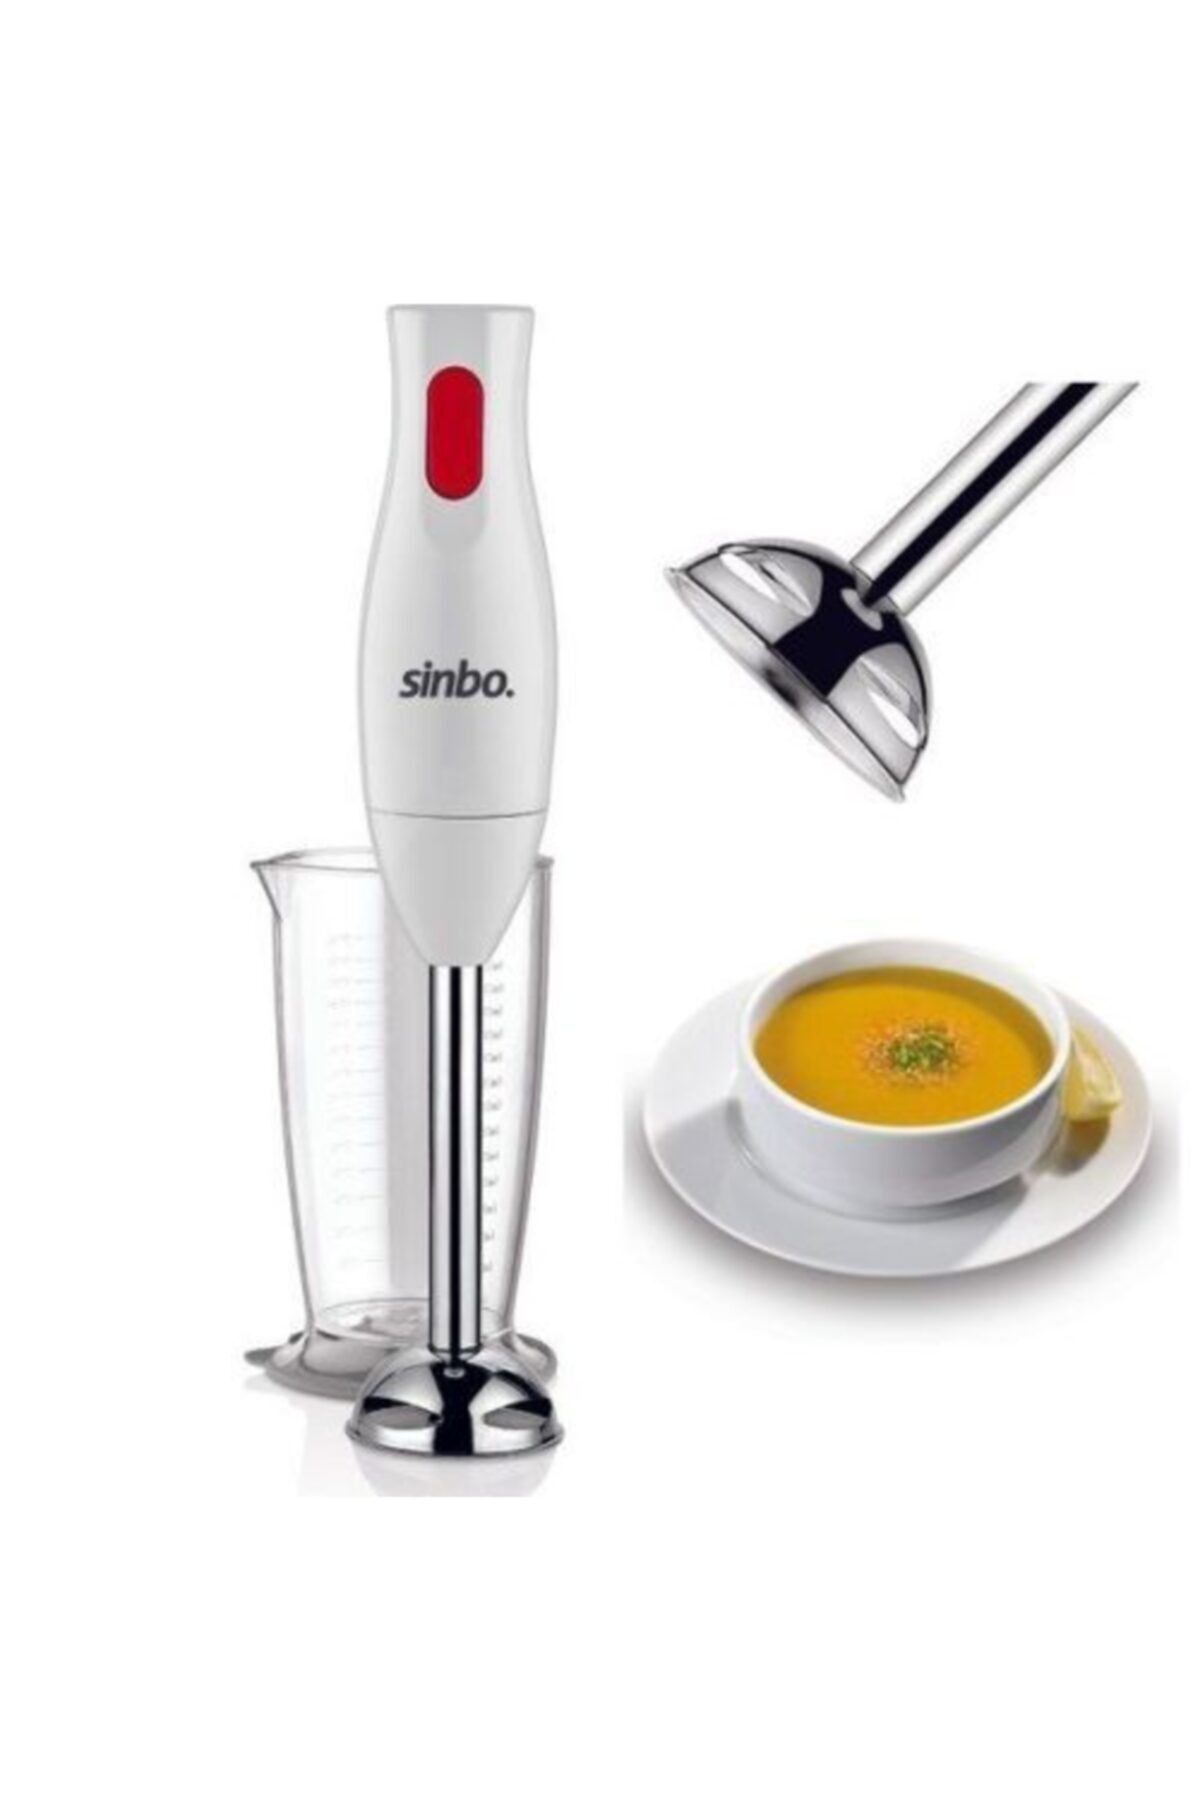 Sinbo Shb-3102 Beyaz Blender Orıjınal El Blenderi Beyaz Emniyet Sistemli Paslanmaz Bıçaklar